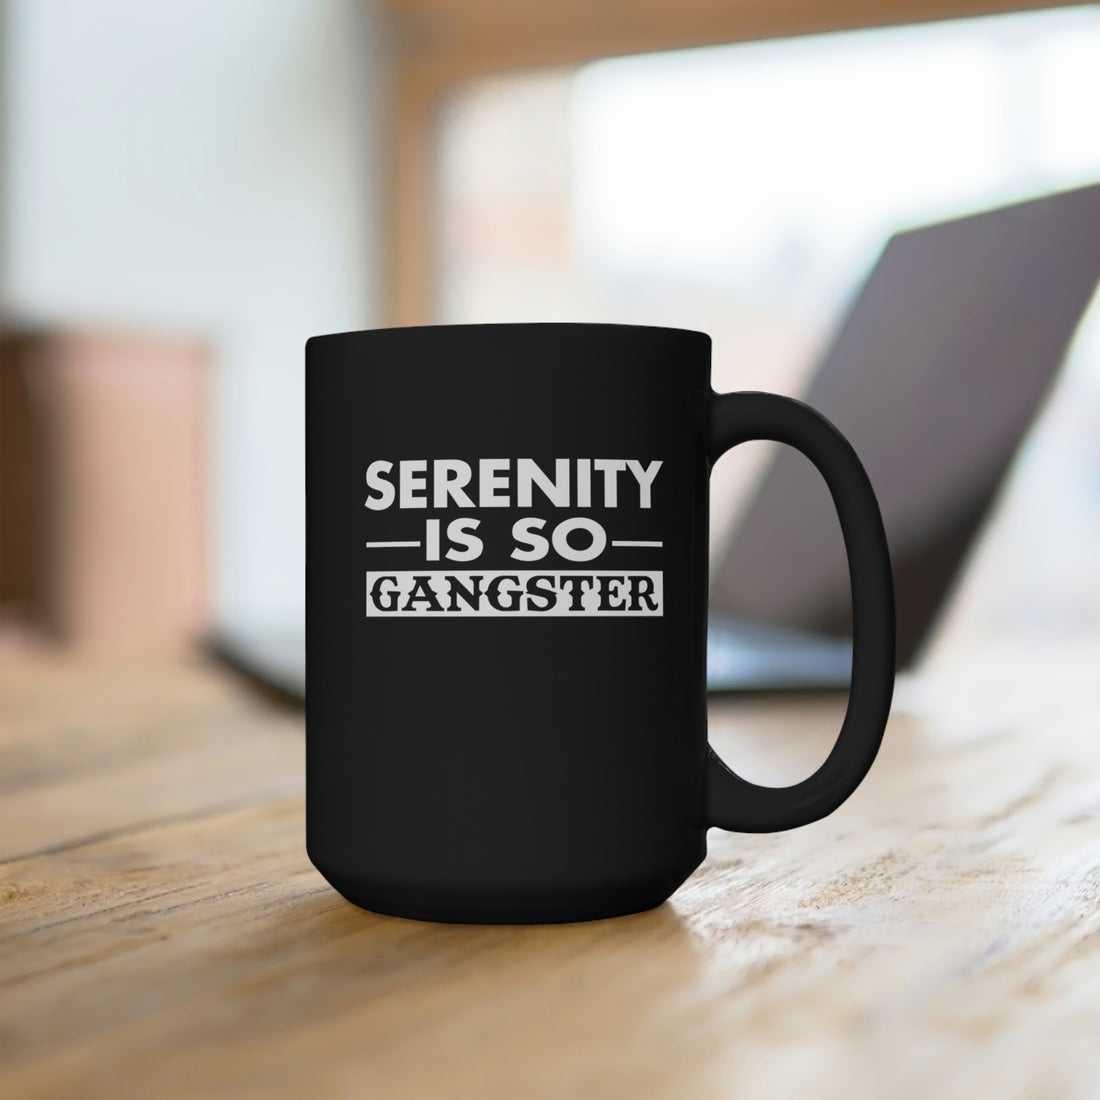 Serenity Is So Gangster - Large 15oz Black Mug